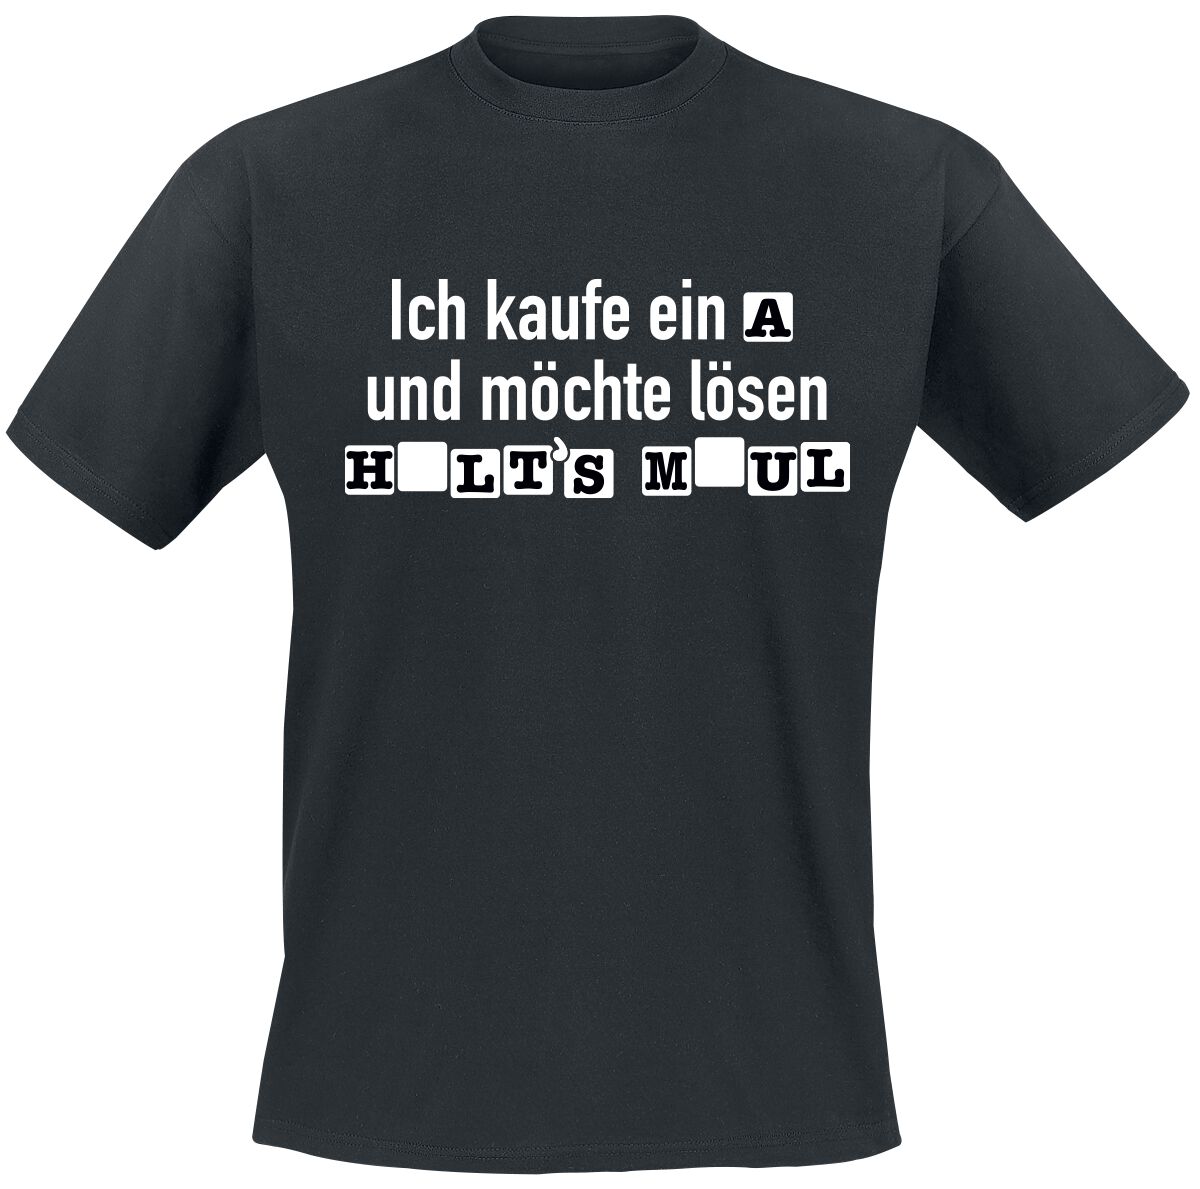 Sprüche T-Shirt - Ich kaufe ein A und möchte lösen - S bis 4XL - für Männer - Größe XXL - schwarz